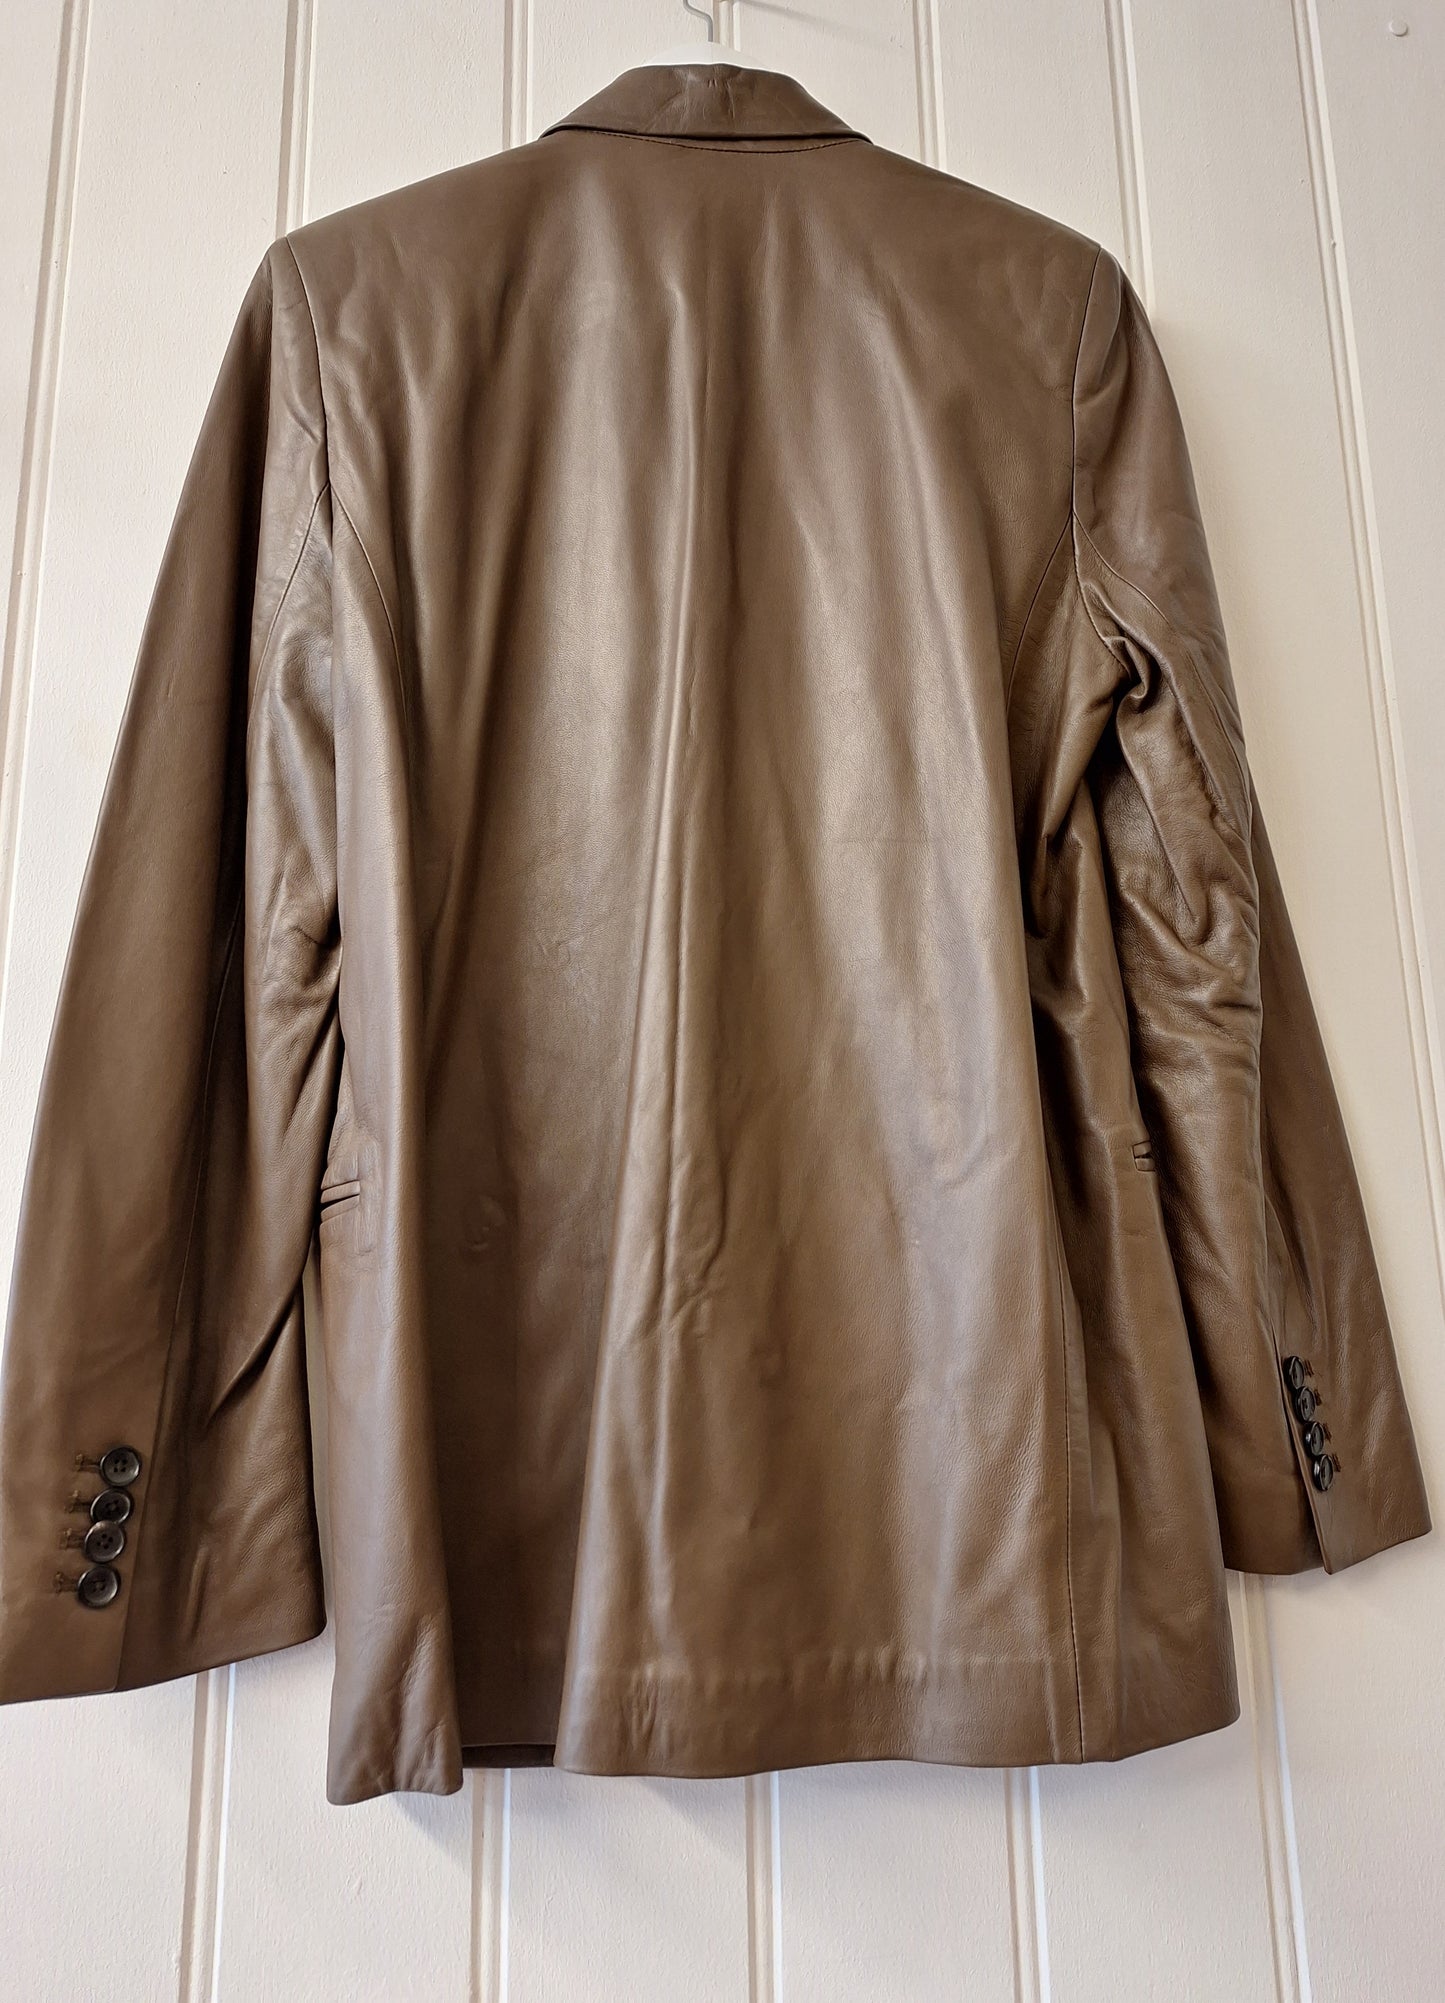 ZARA blazer style leather jacket M